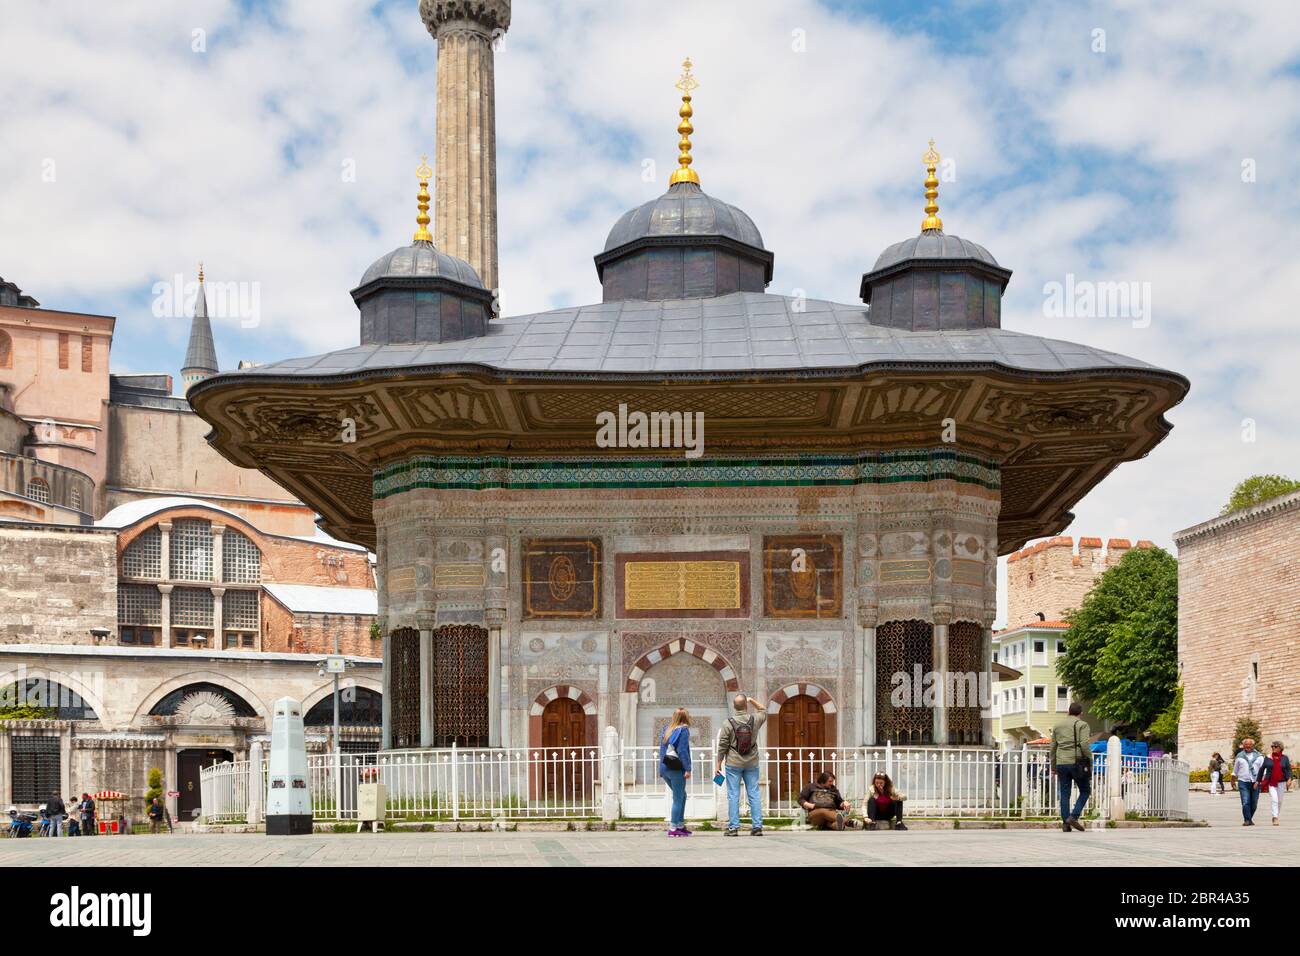 Istanbul, Turchia - Maggio 09 2019: La Fontana del Sultano Ahmed III è una fontana in una struttura rococò turca nella grande piazza. Foto Stock